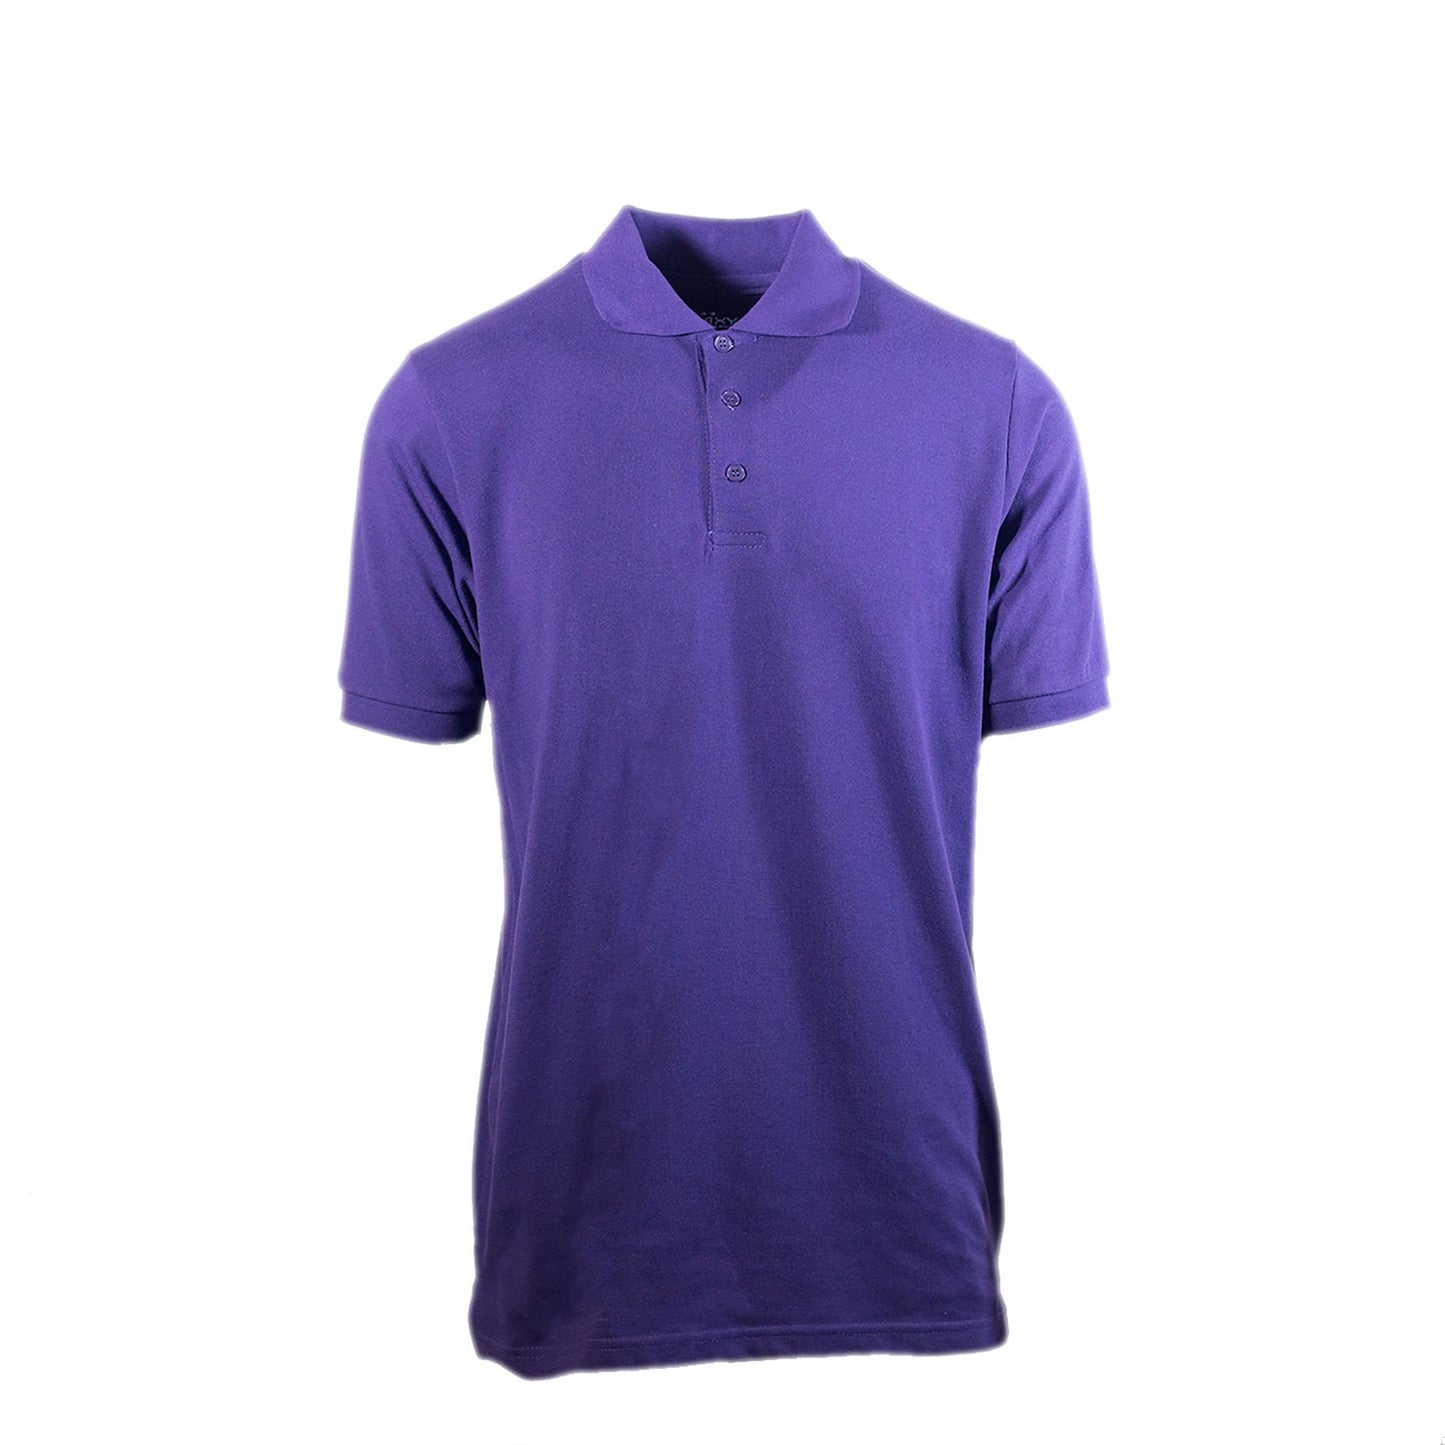 Men's Short Sleeve Pique Polo Shirt - GalaxybyHarvic